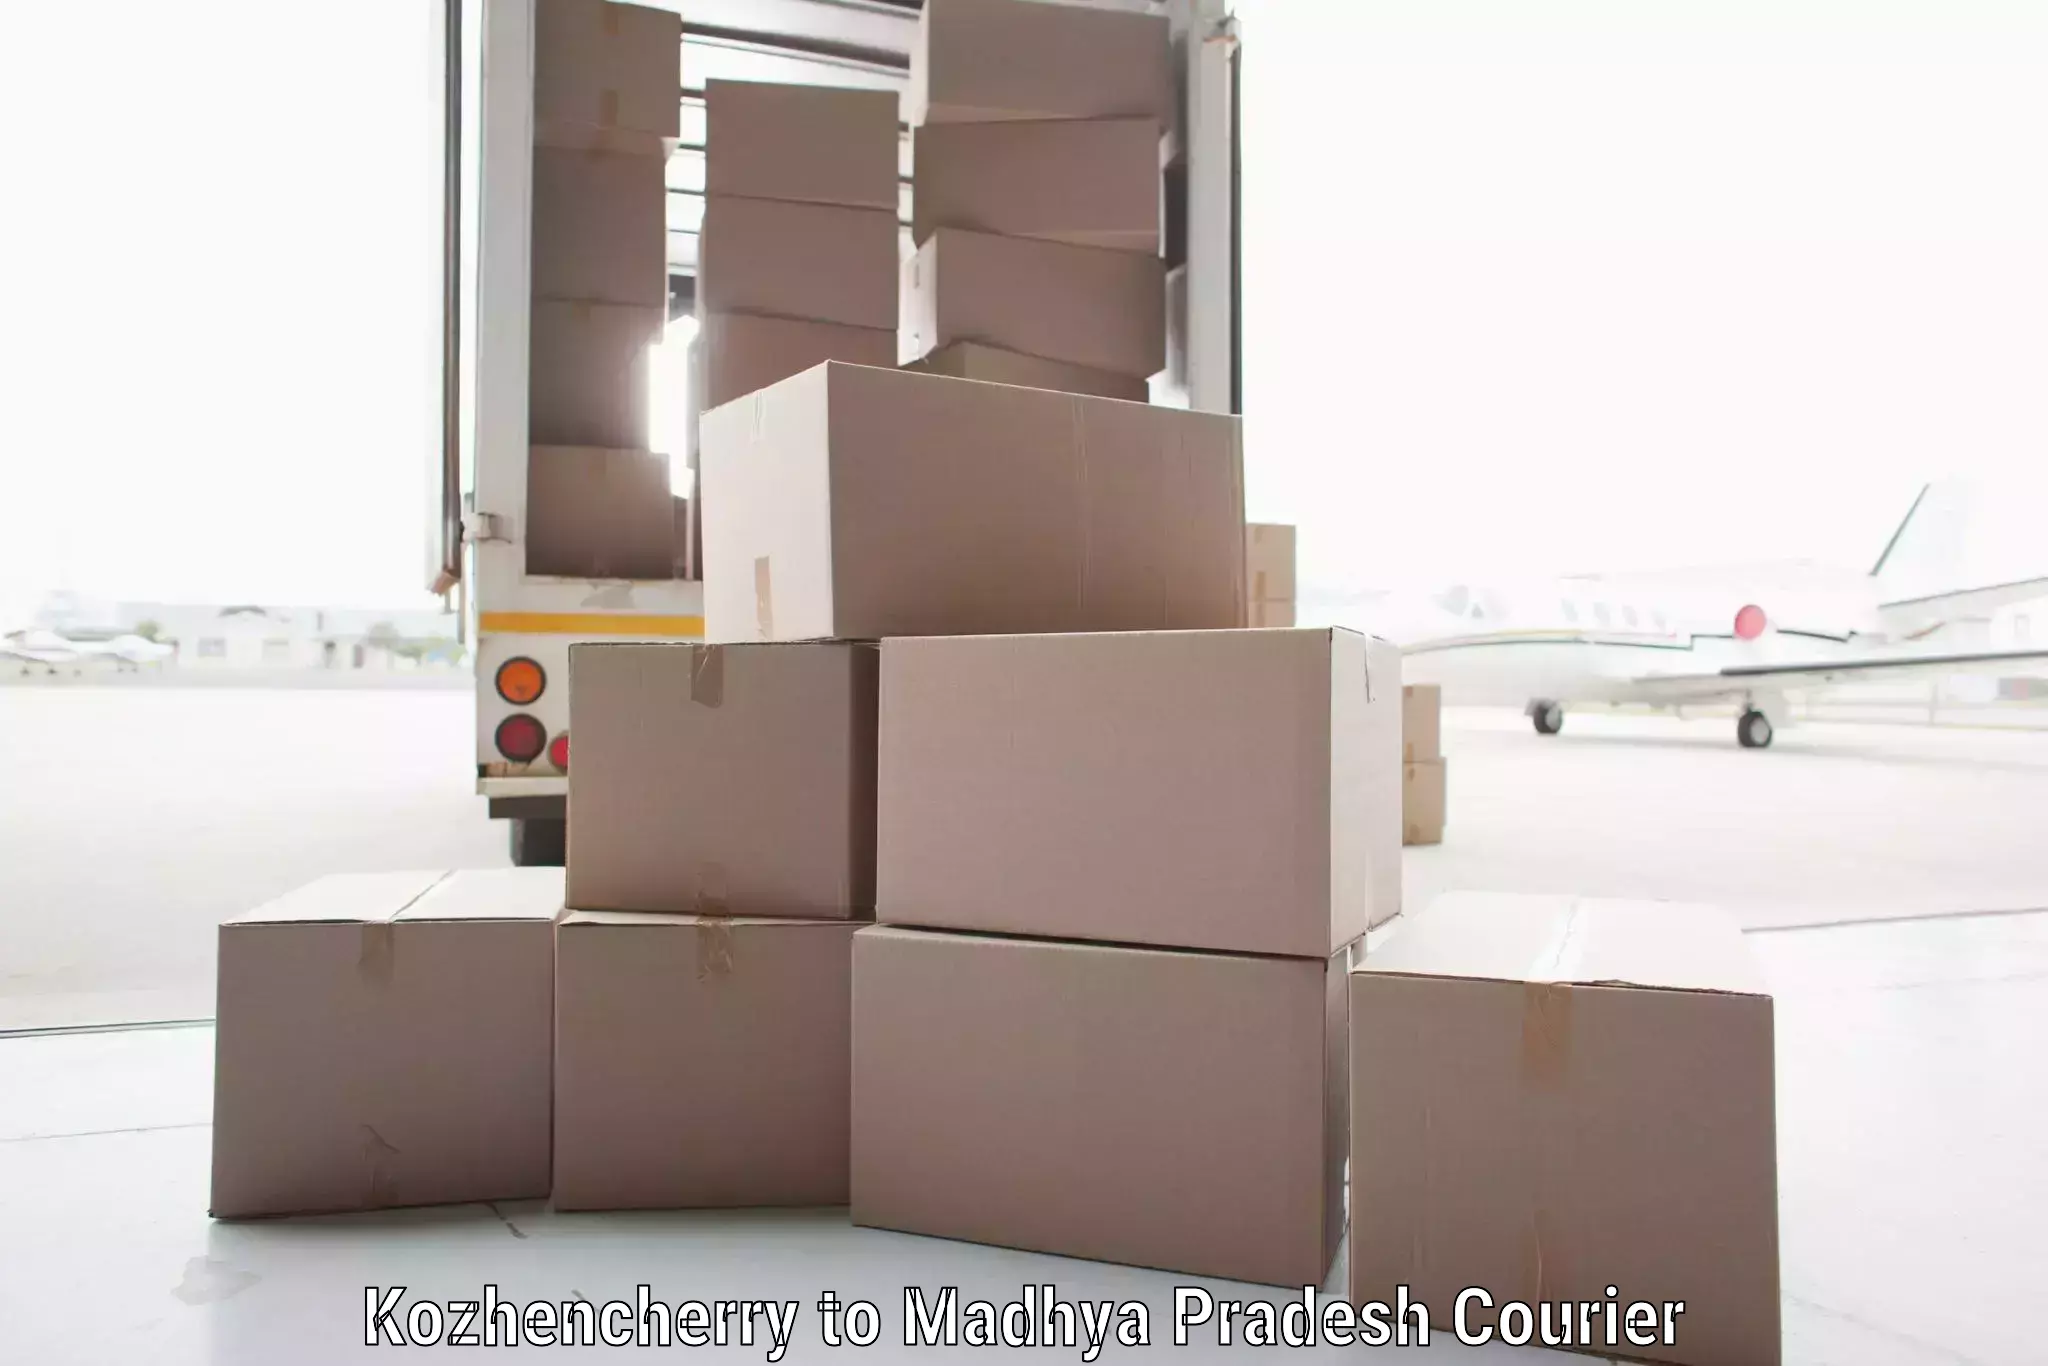 Door-to-door shipment in Kozhencherry to Panna